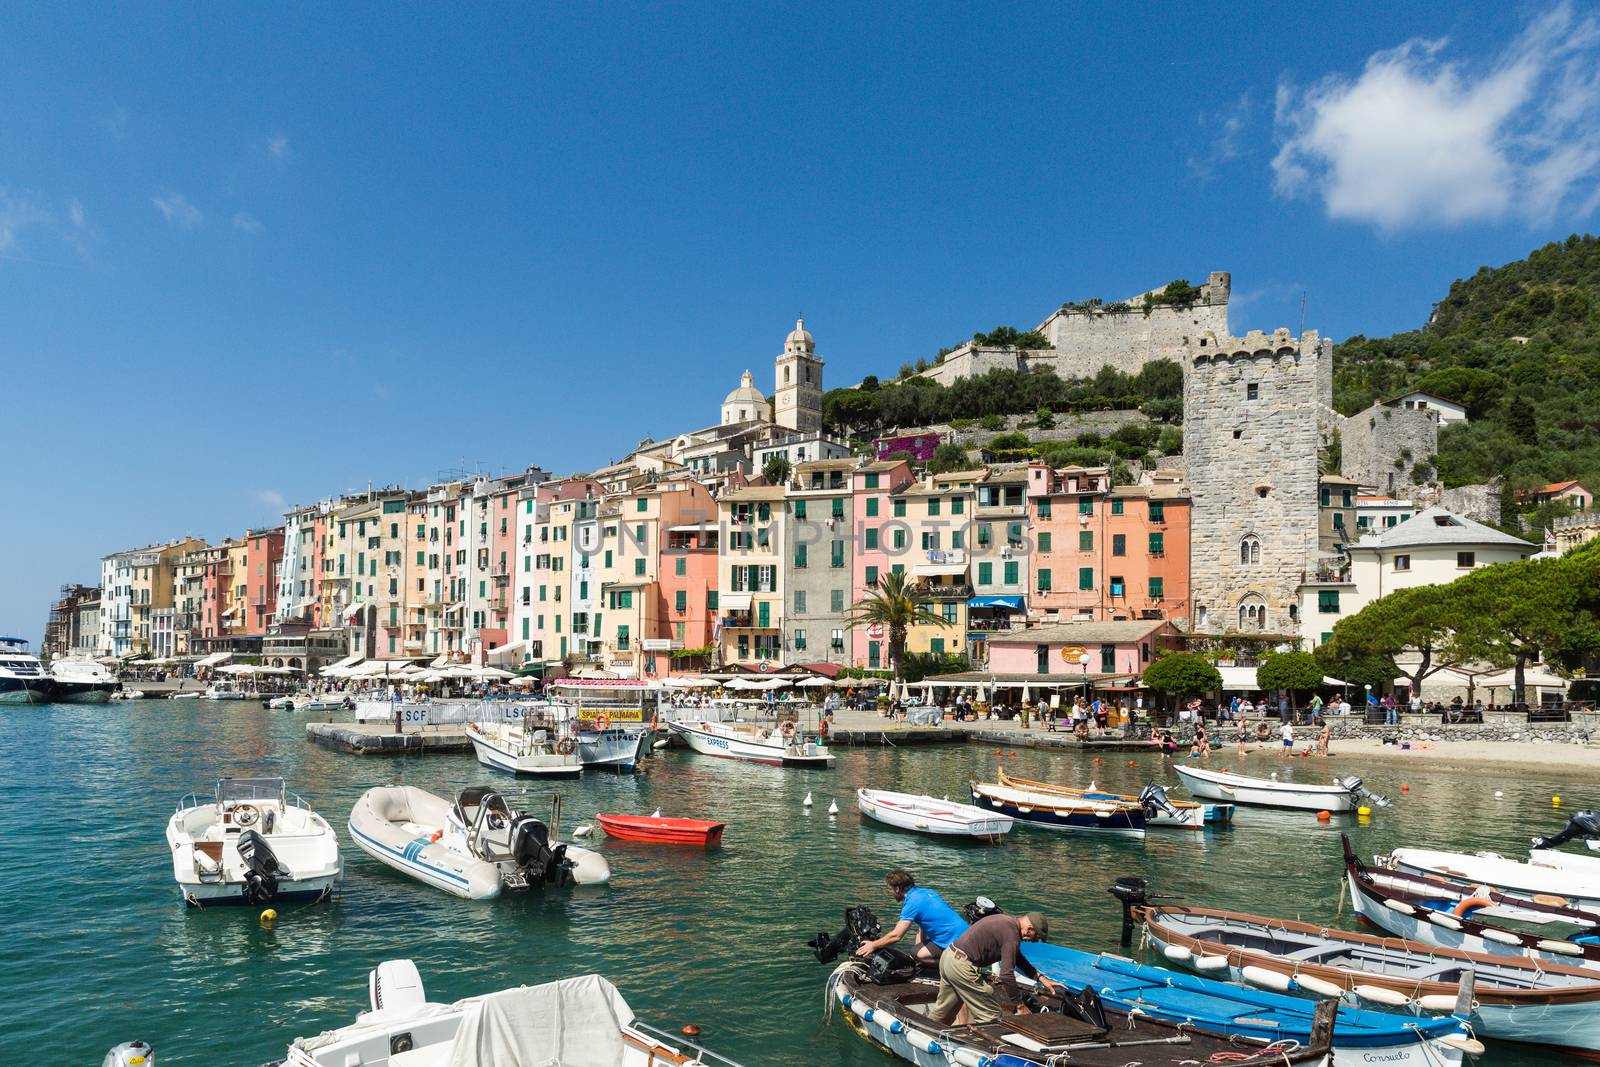 Portovenere in the Ligurian region of Italy near the Cinque Terre